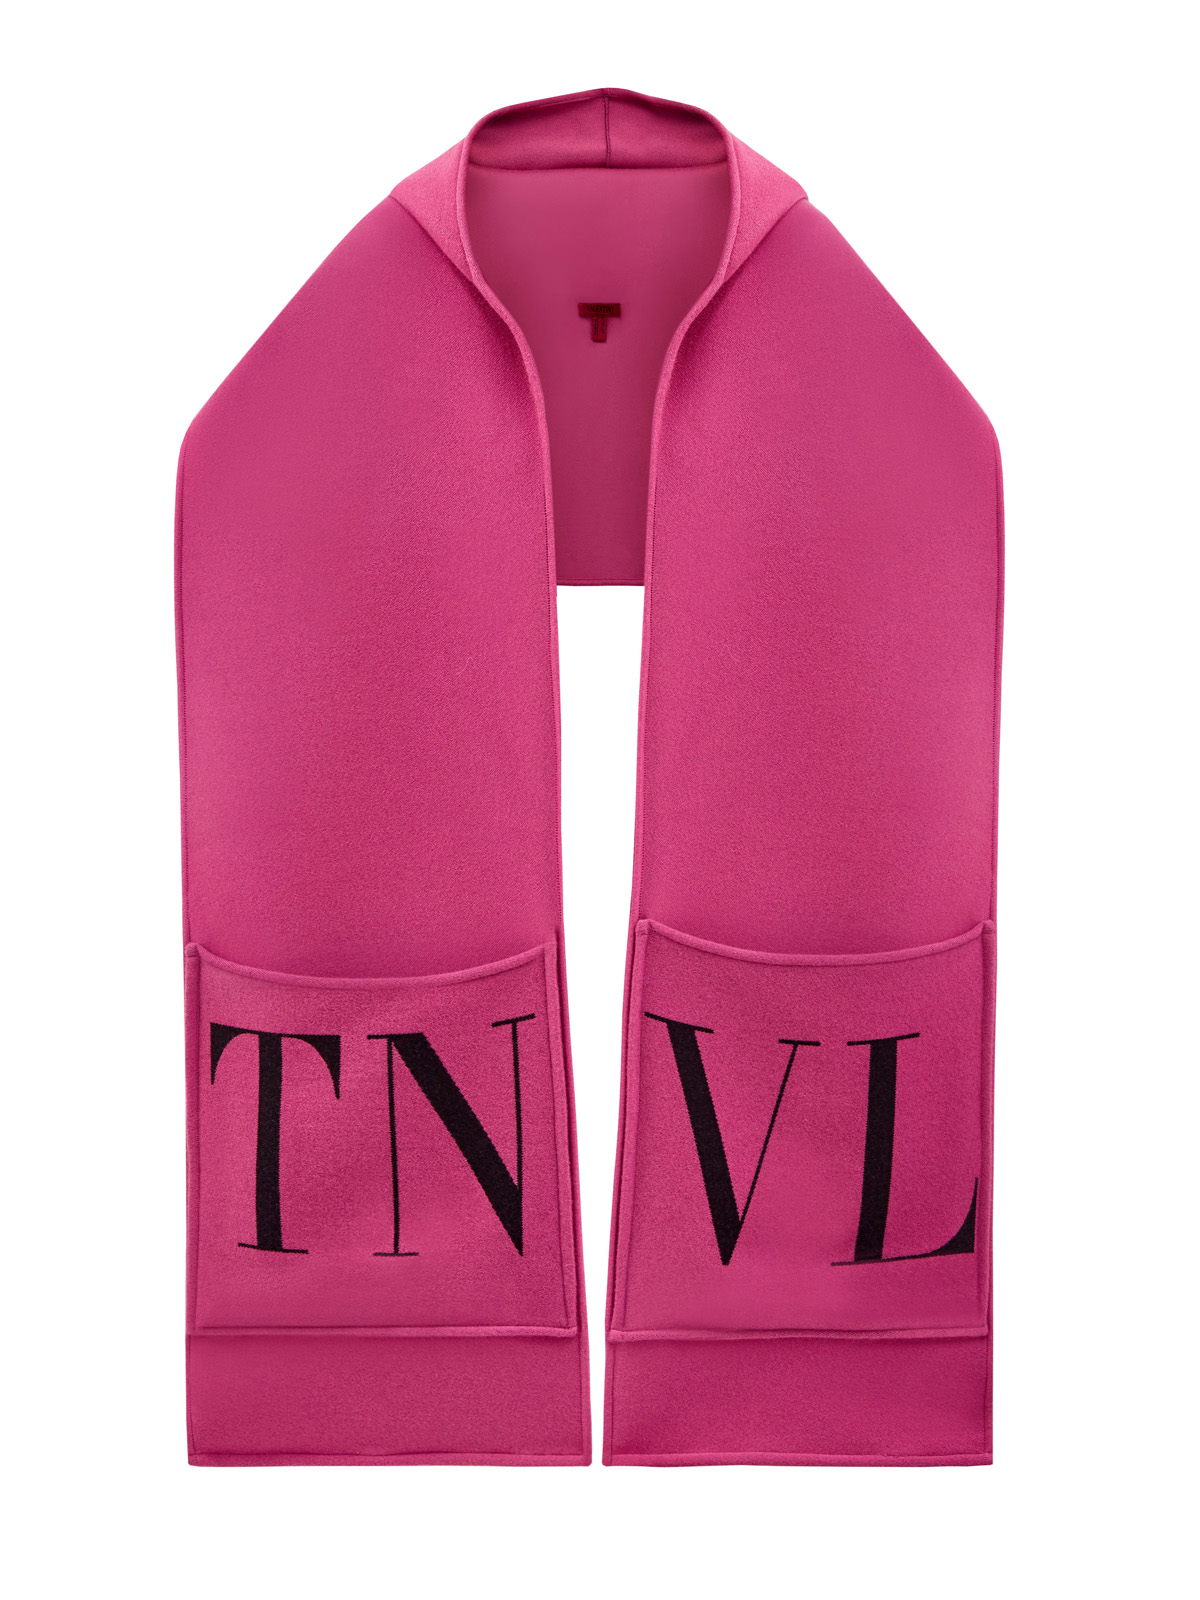 Шарф из шерстяной пряжи с объемными карманами и капюшоном VALENTINO GARAVANI, цвет розовый, размер 39;40 - фото 1